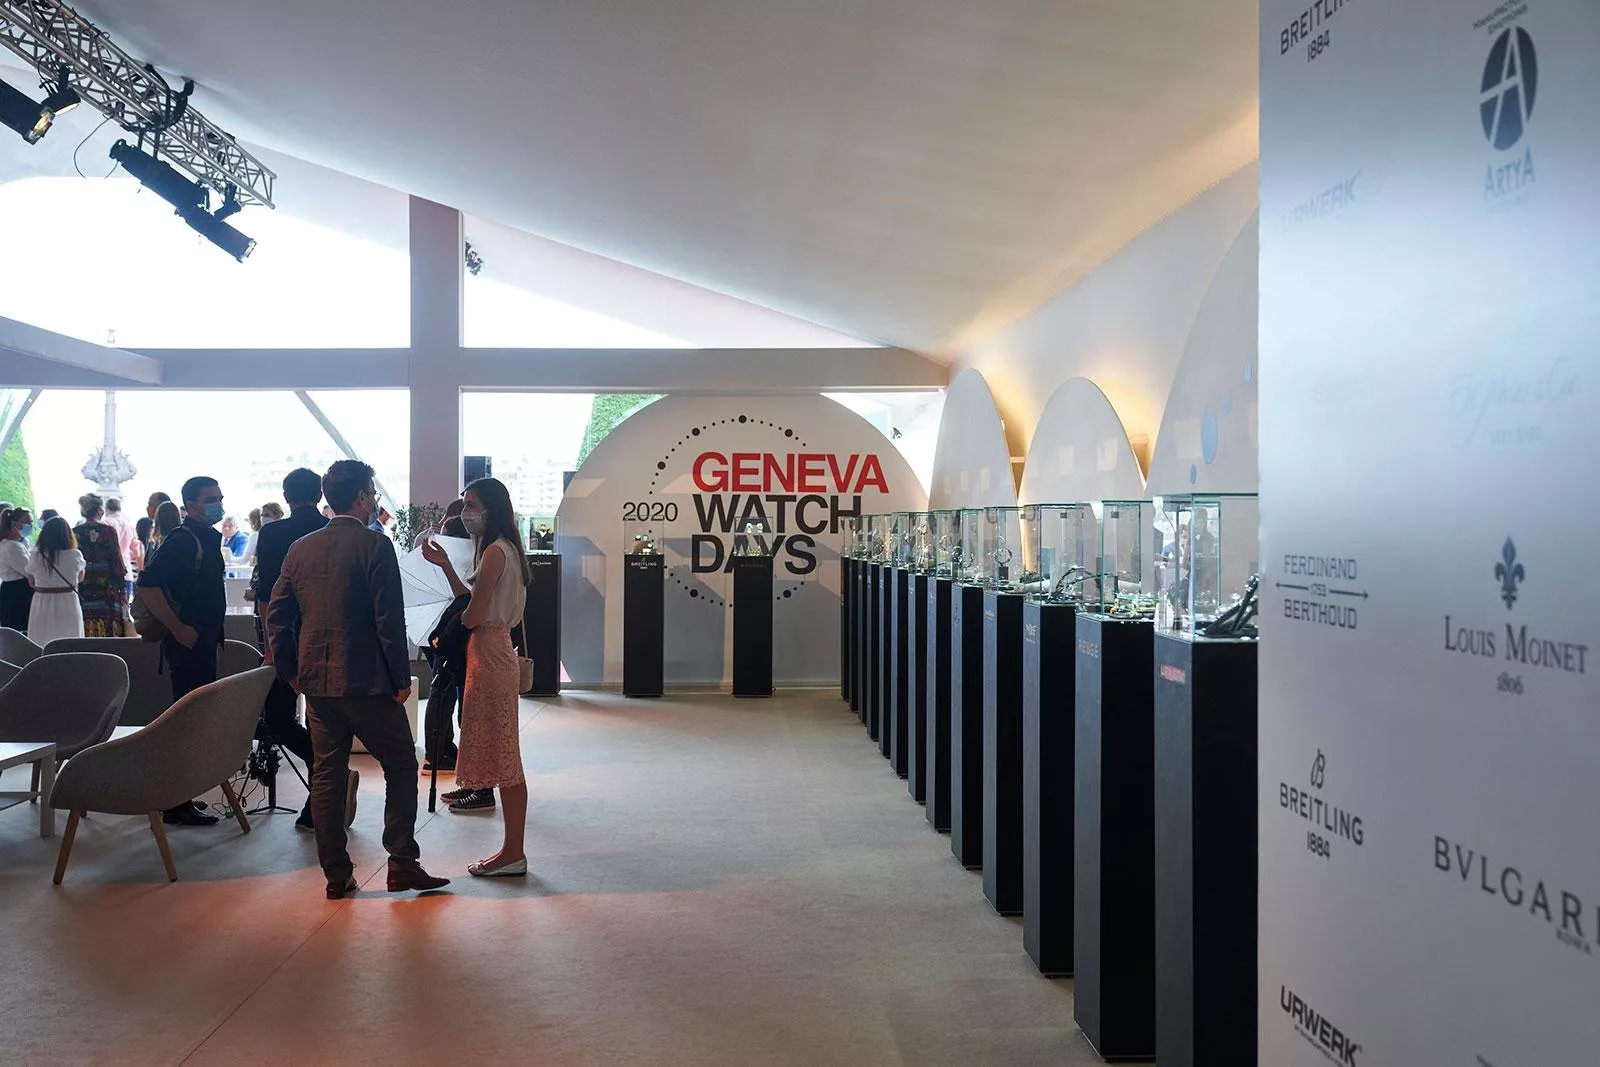 معرض Geneva Watch Days 2020: أجدد إصدارات ساعات لأهم الماركات العالمية